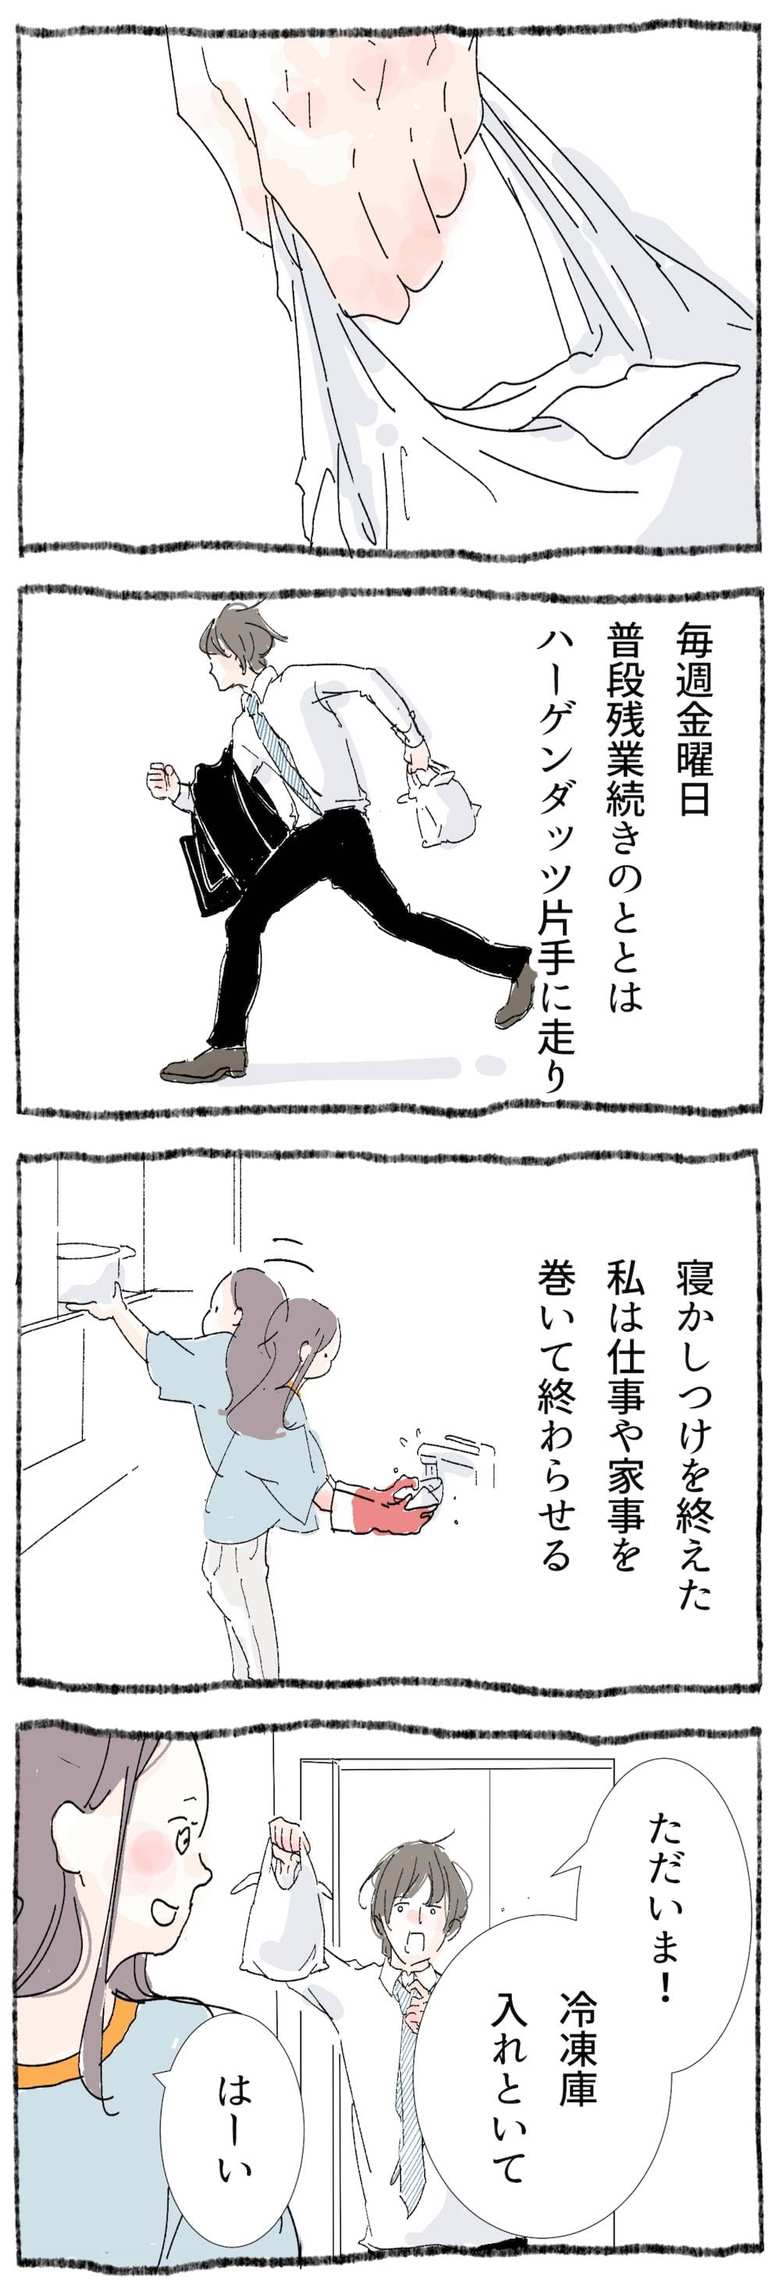 漫画「ひとづきあい練習帳」15話1p